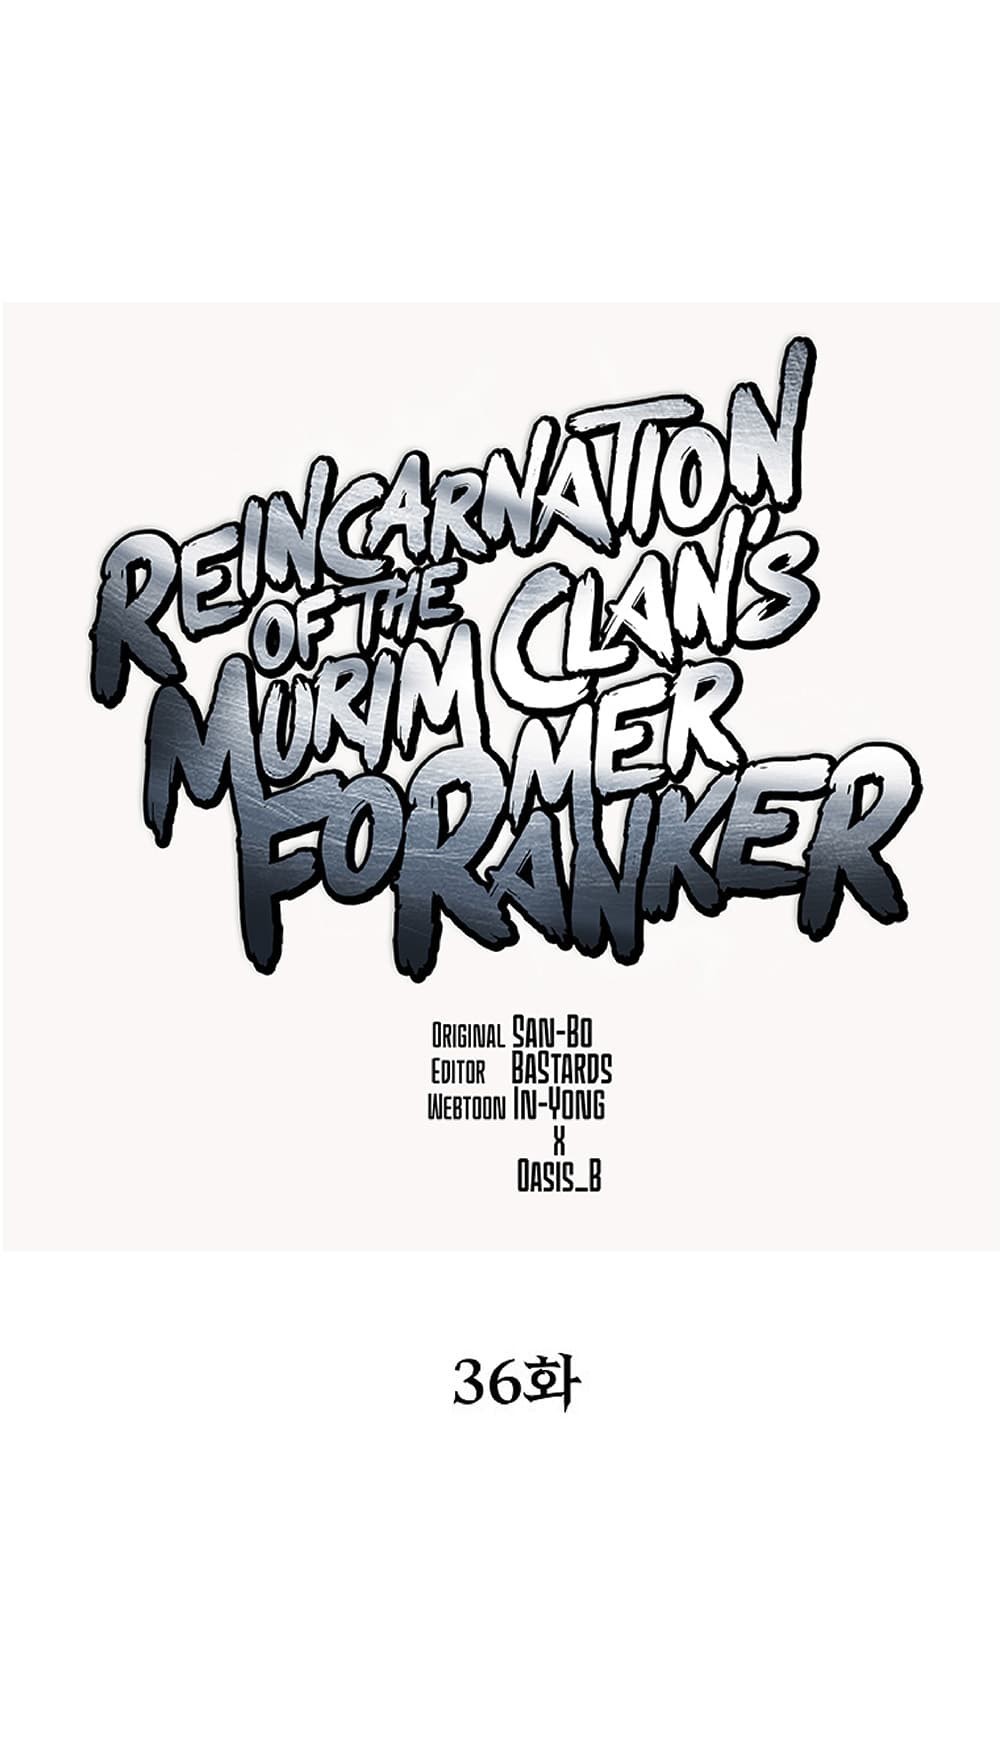 Reincarnation-of-the-Murim-Clans-Former-Ranker--36-21.jpg